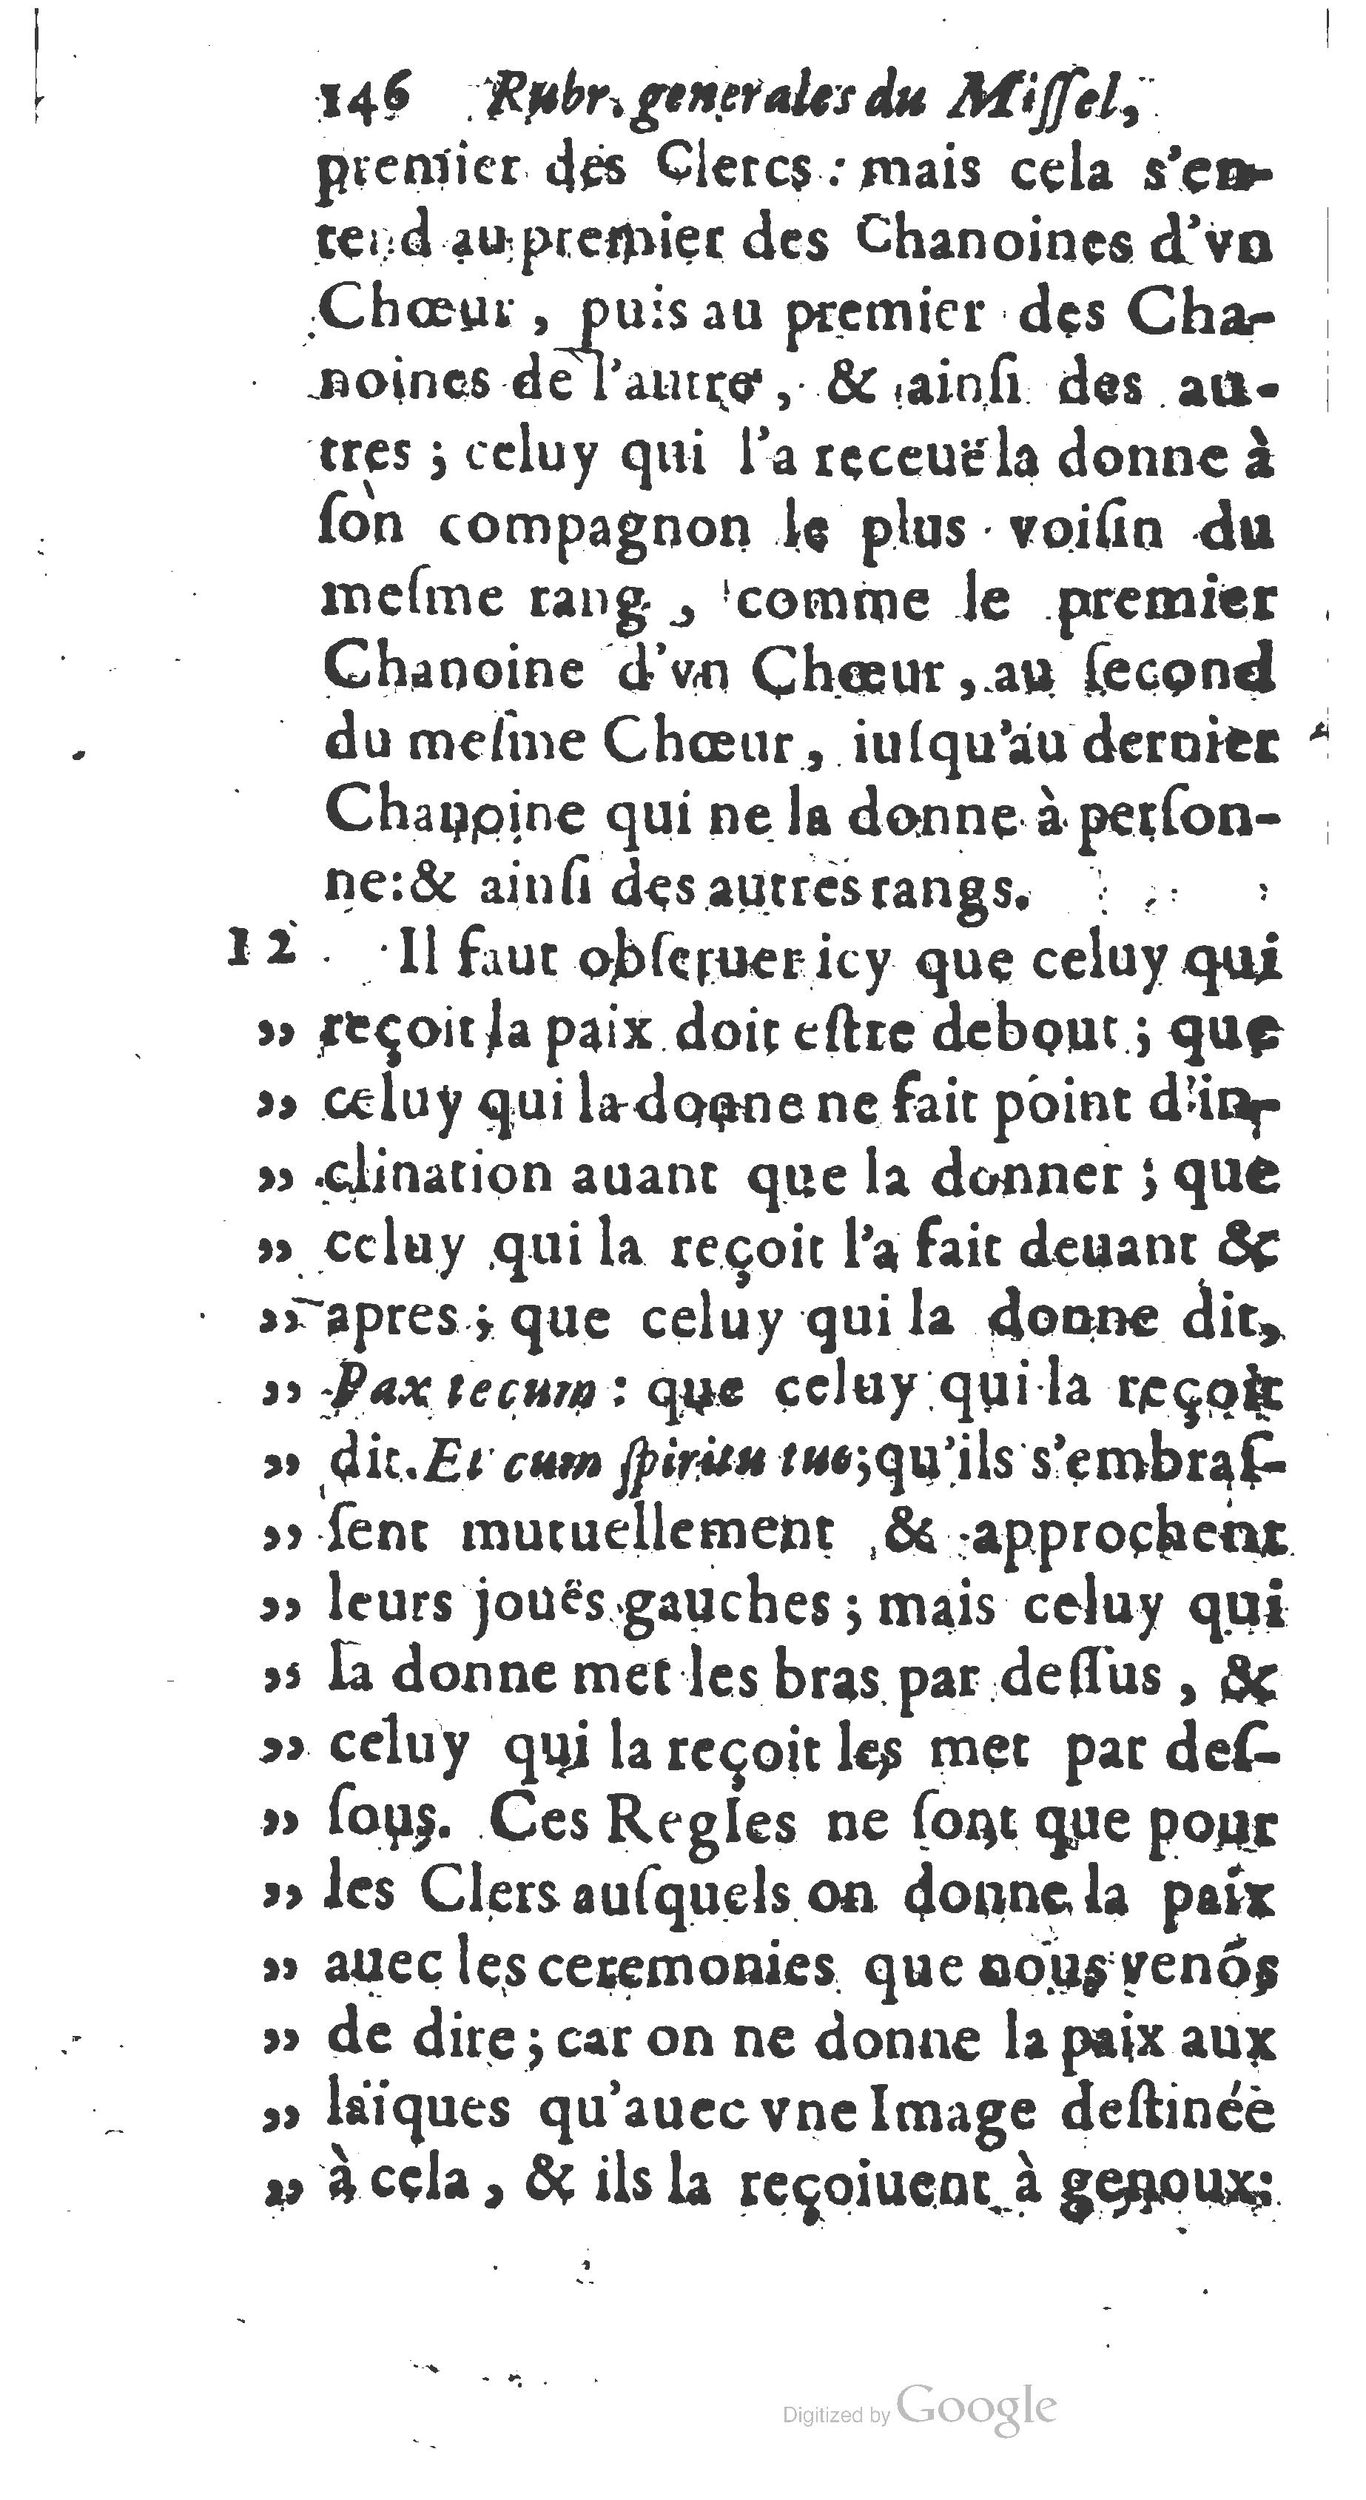 1651 Abrégé du trésor des cérémonies ecclésiastiques Guillermet_BM Lyon_Page_265.jpg